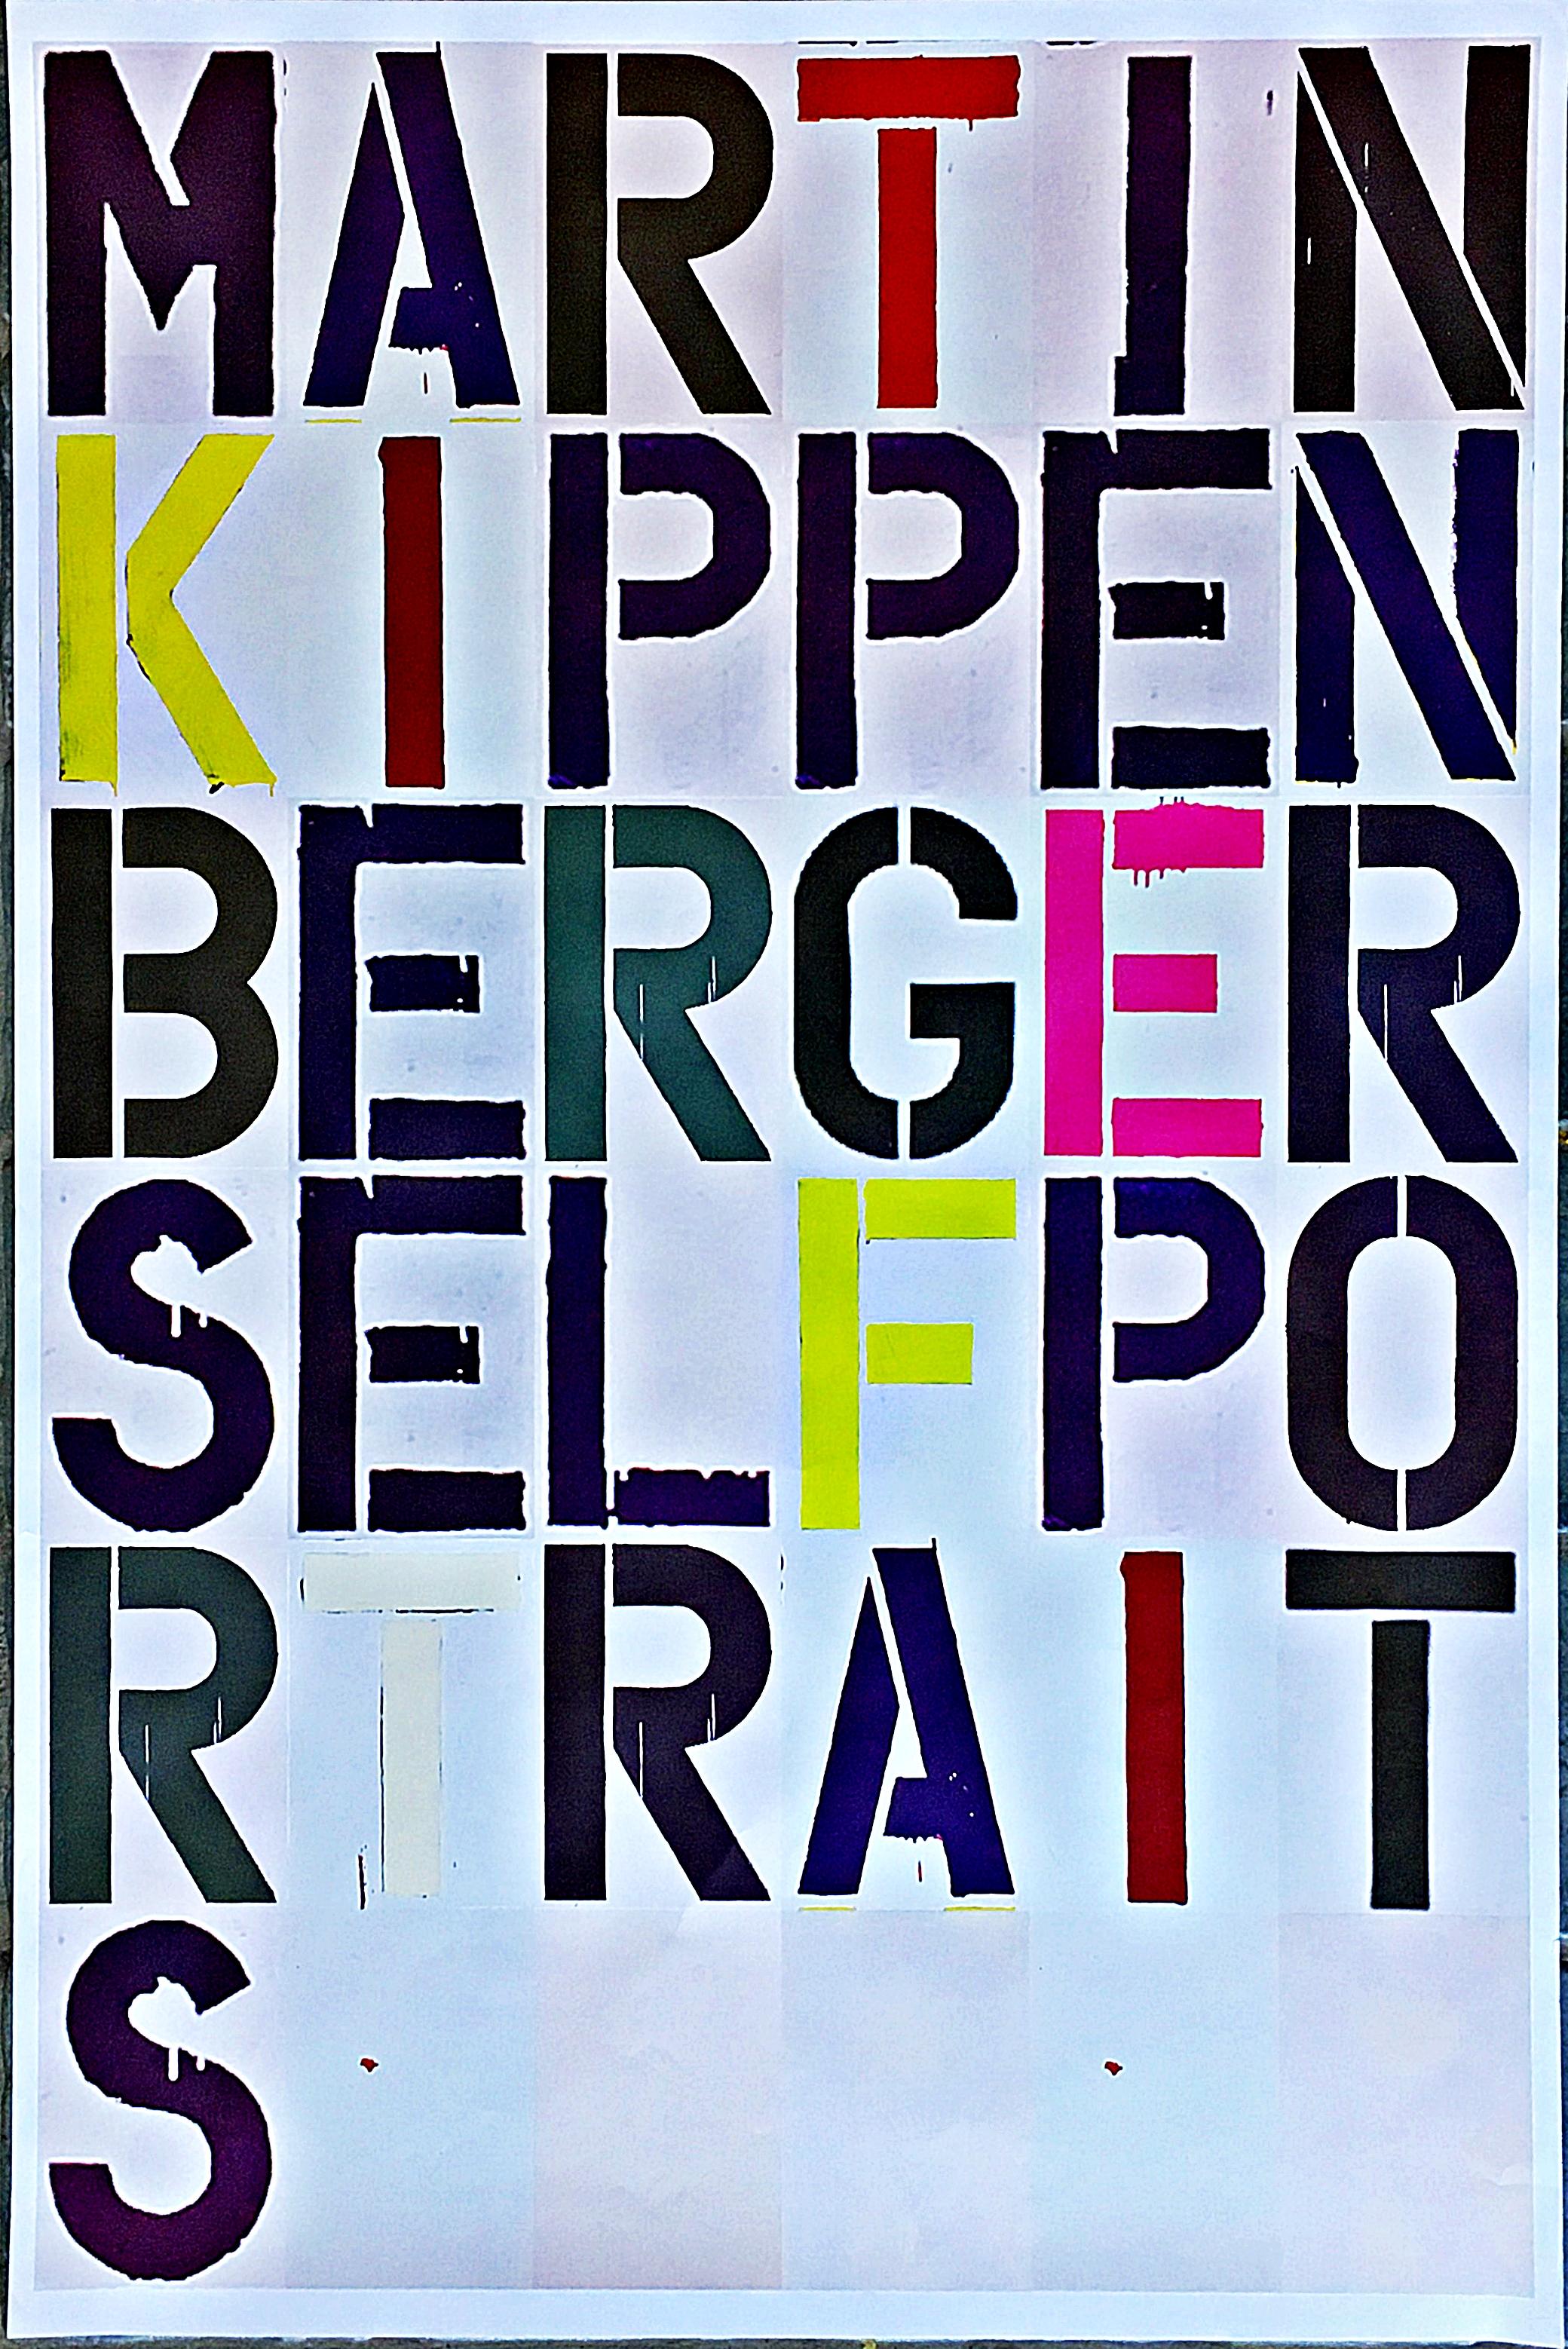 Christophe Wolle
Martin Kippenberger Self-Portraits Poster, 2005
Offsetlithografisches Plakat in Farben auf glattem Velin.
36 × 24 Zoll
Ungerahmt

Dieses von Christopher Wool entworfene Plakat wurde anlässlich der Ausstellung von Martin Kippenberger